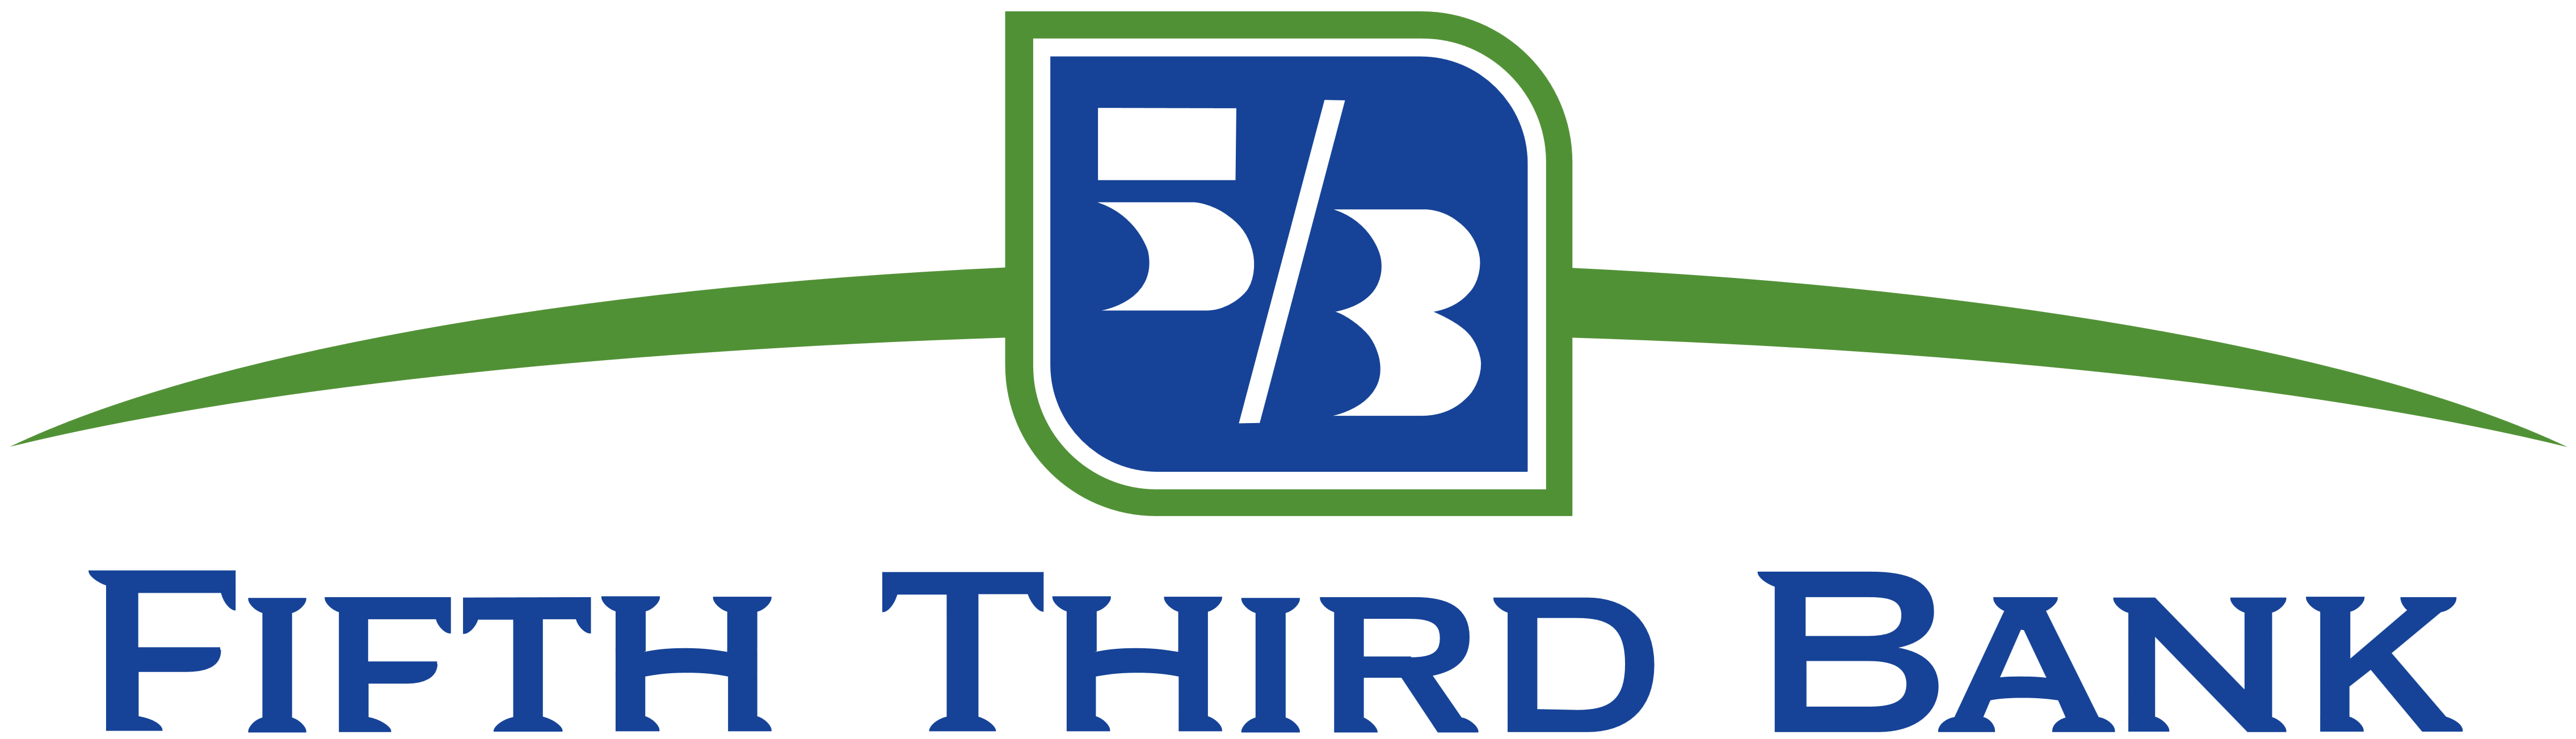 Fifth Third Bank (5/3 Bank) logo, logotype